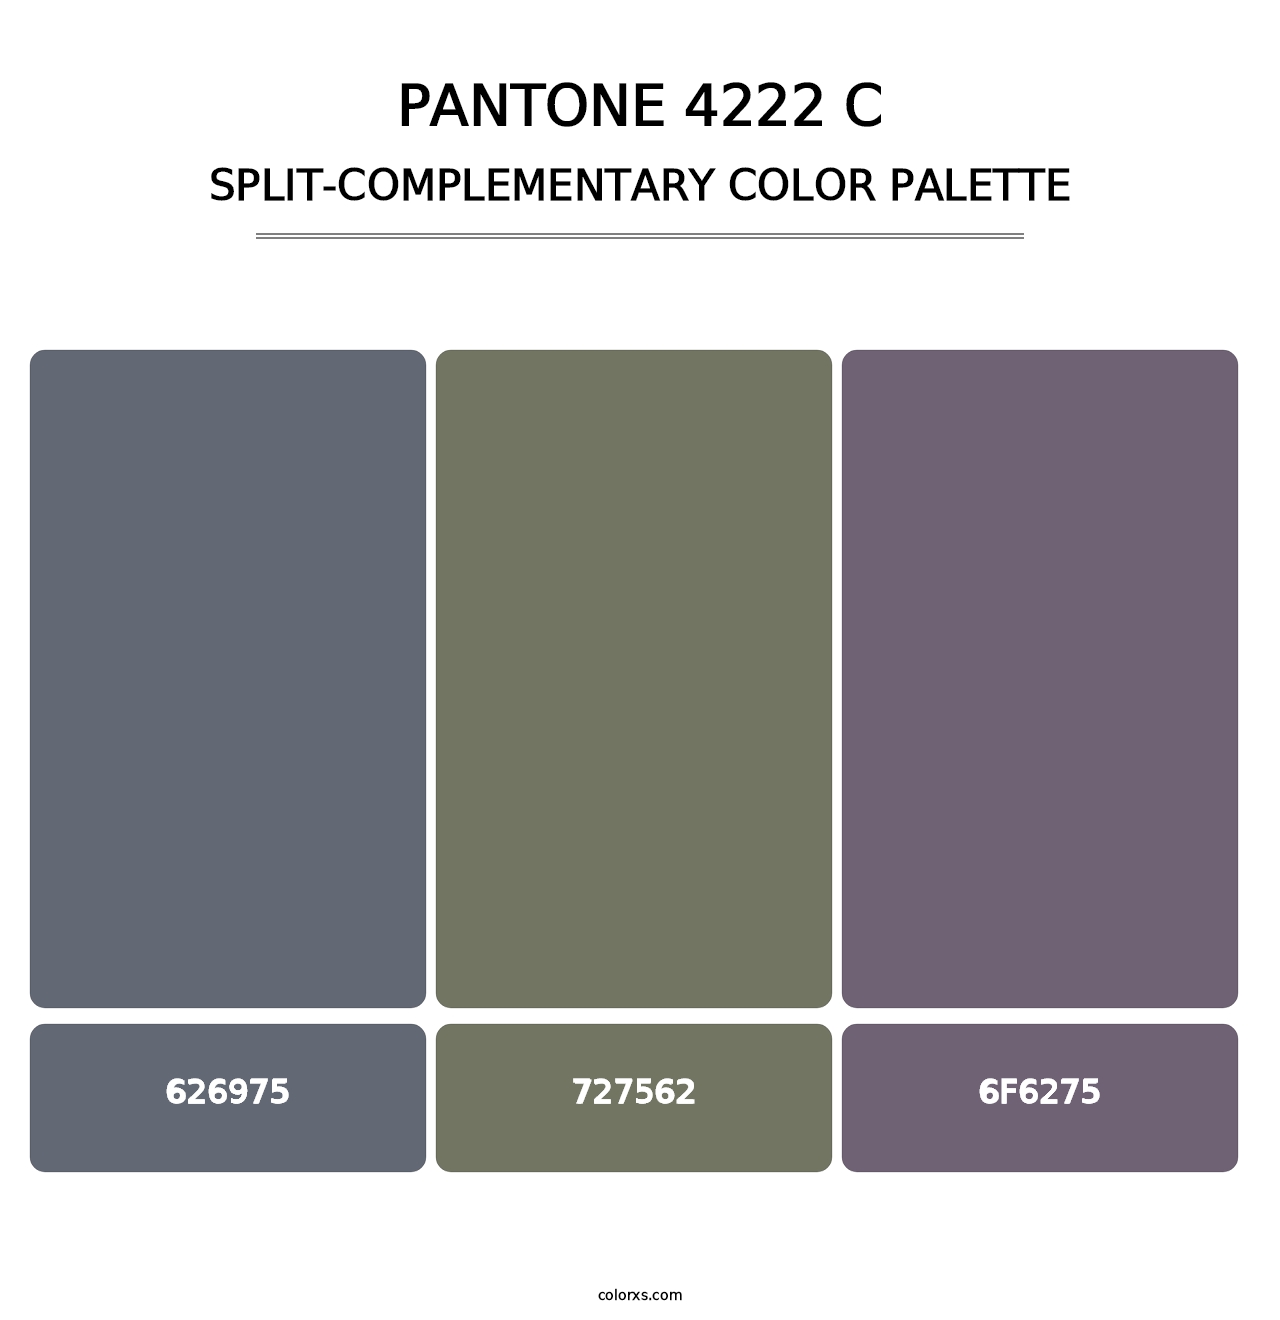 PANTONE 4222 C - Split-Complementary Color Palette